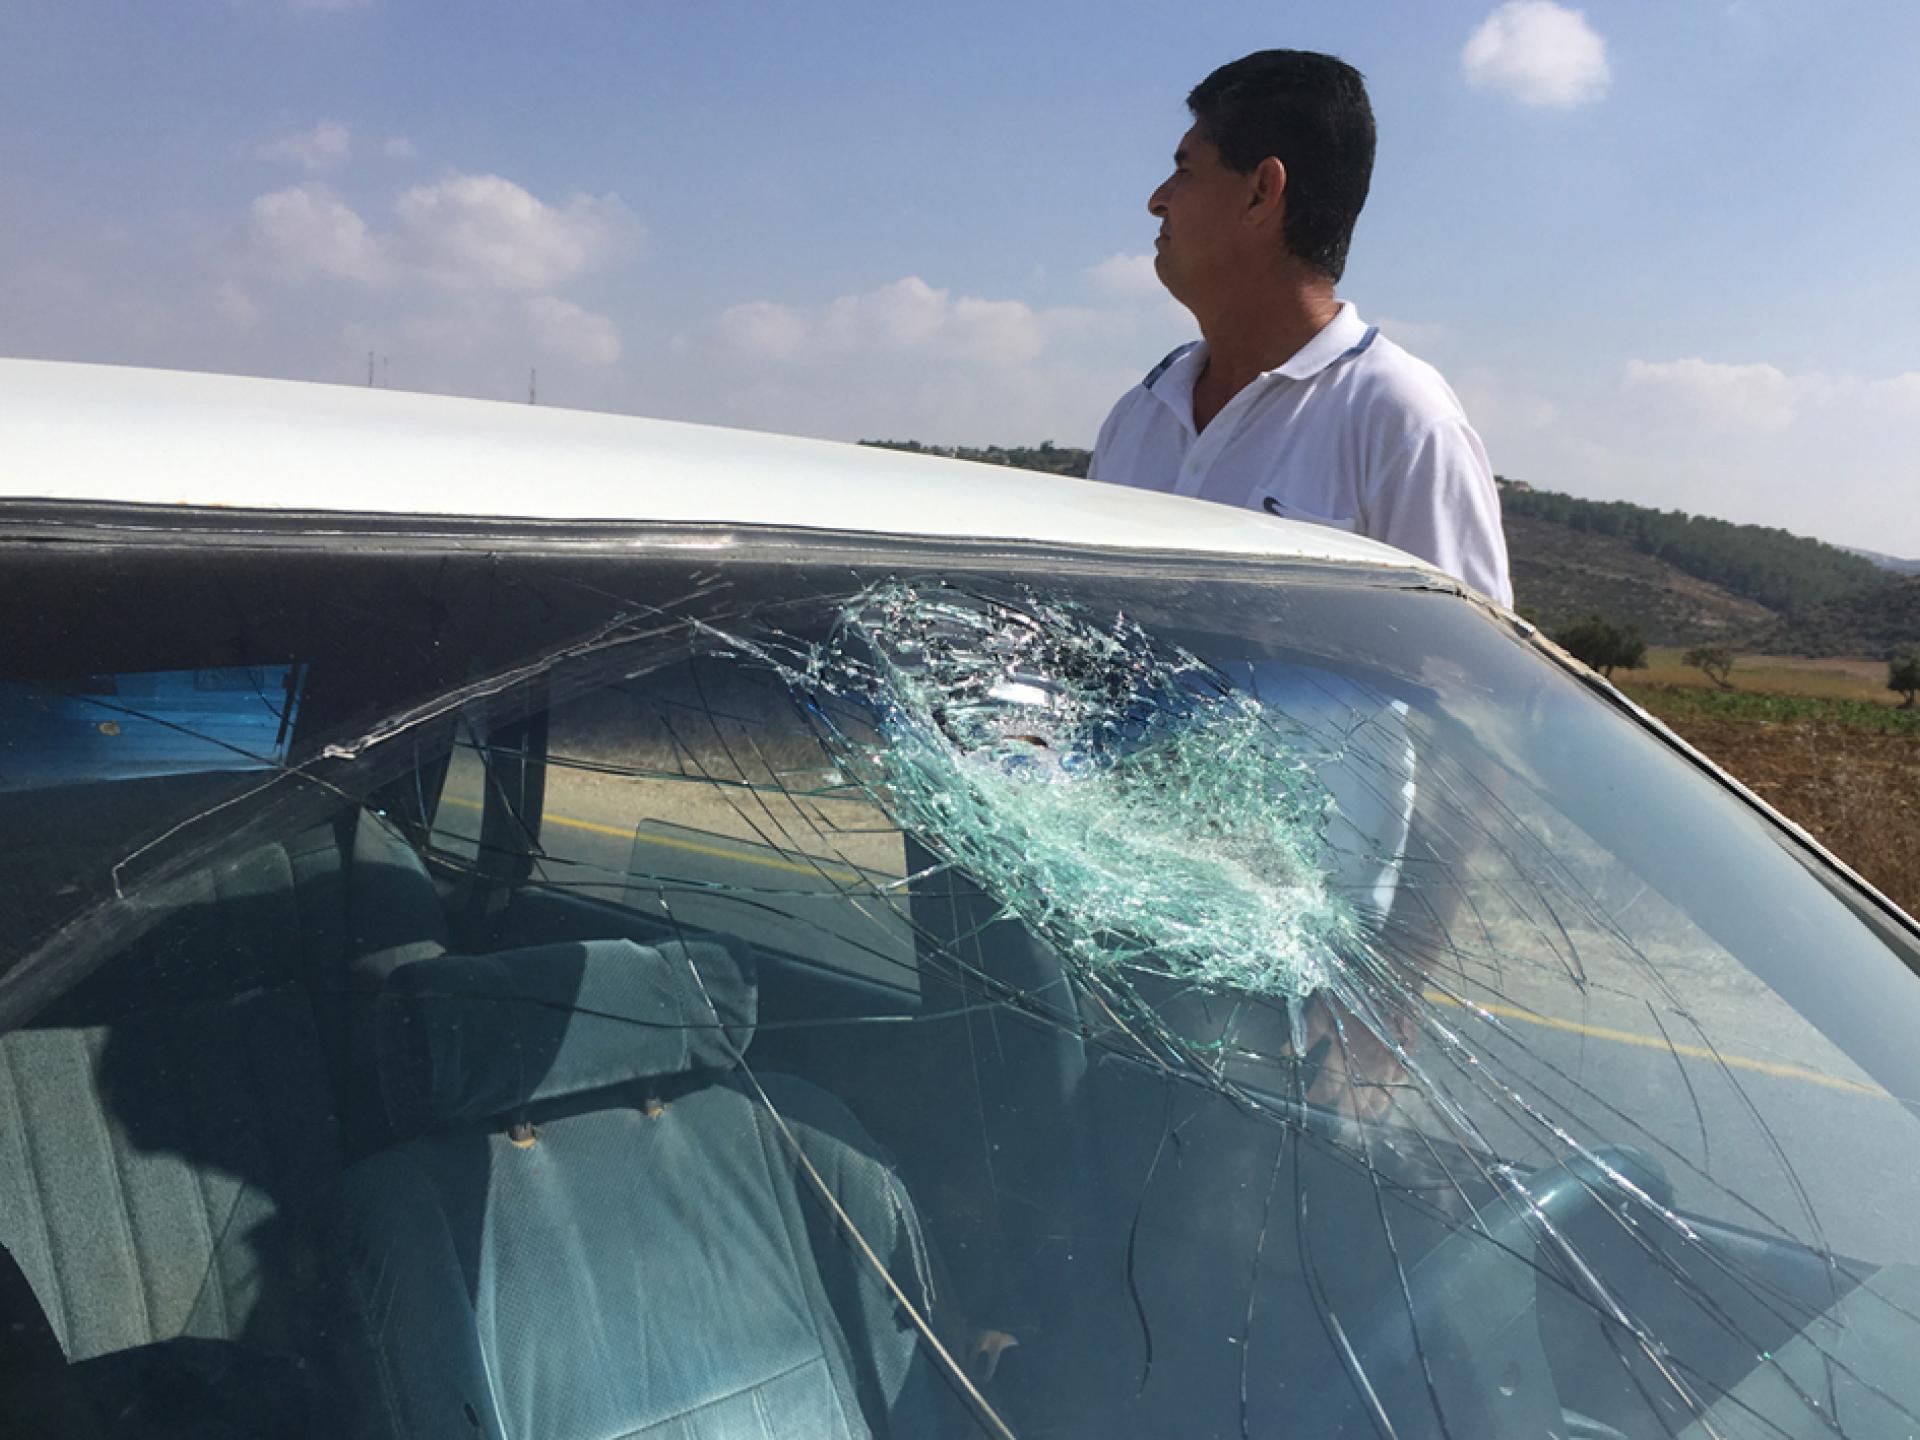 בדרך למחסום יעבד ילדים מנפצים חלון של רכב פלסטיני